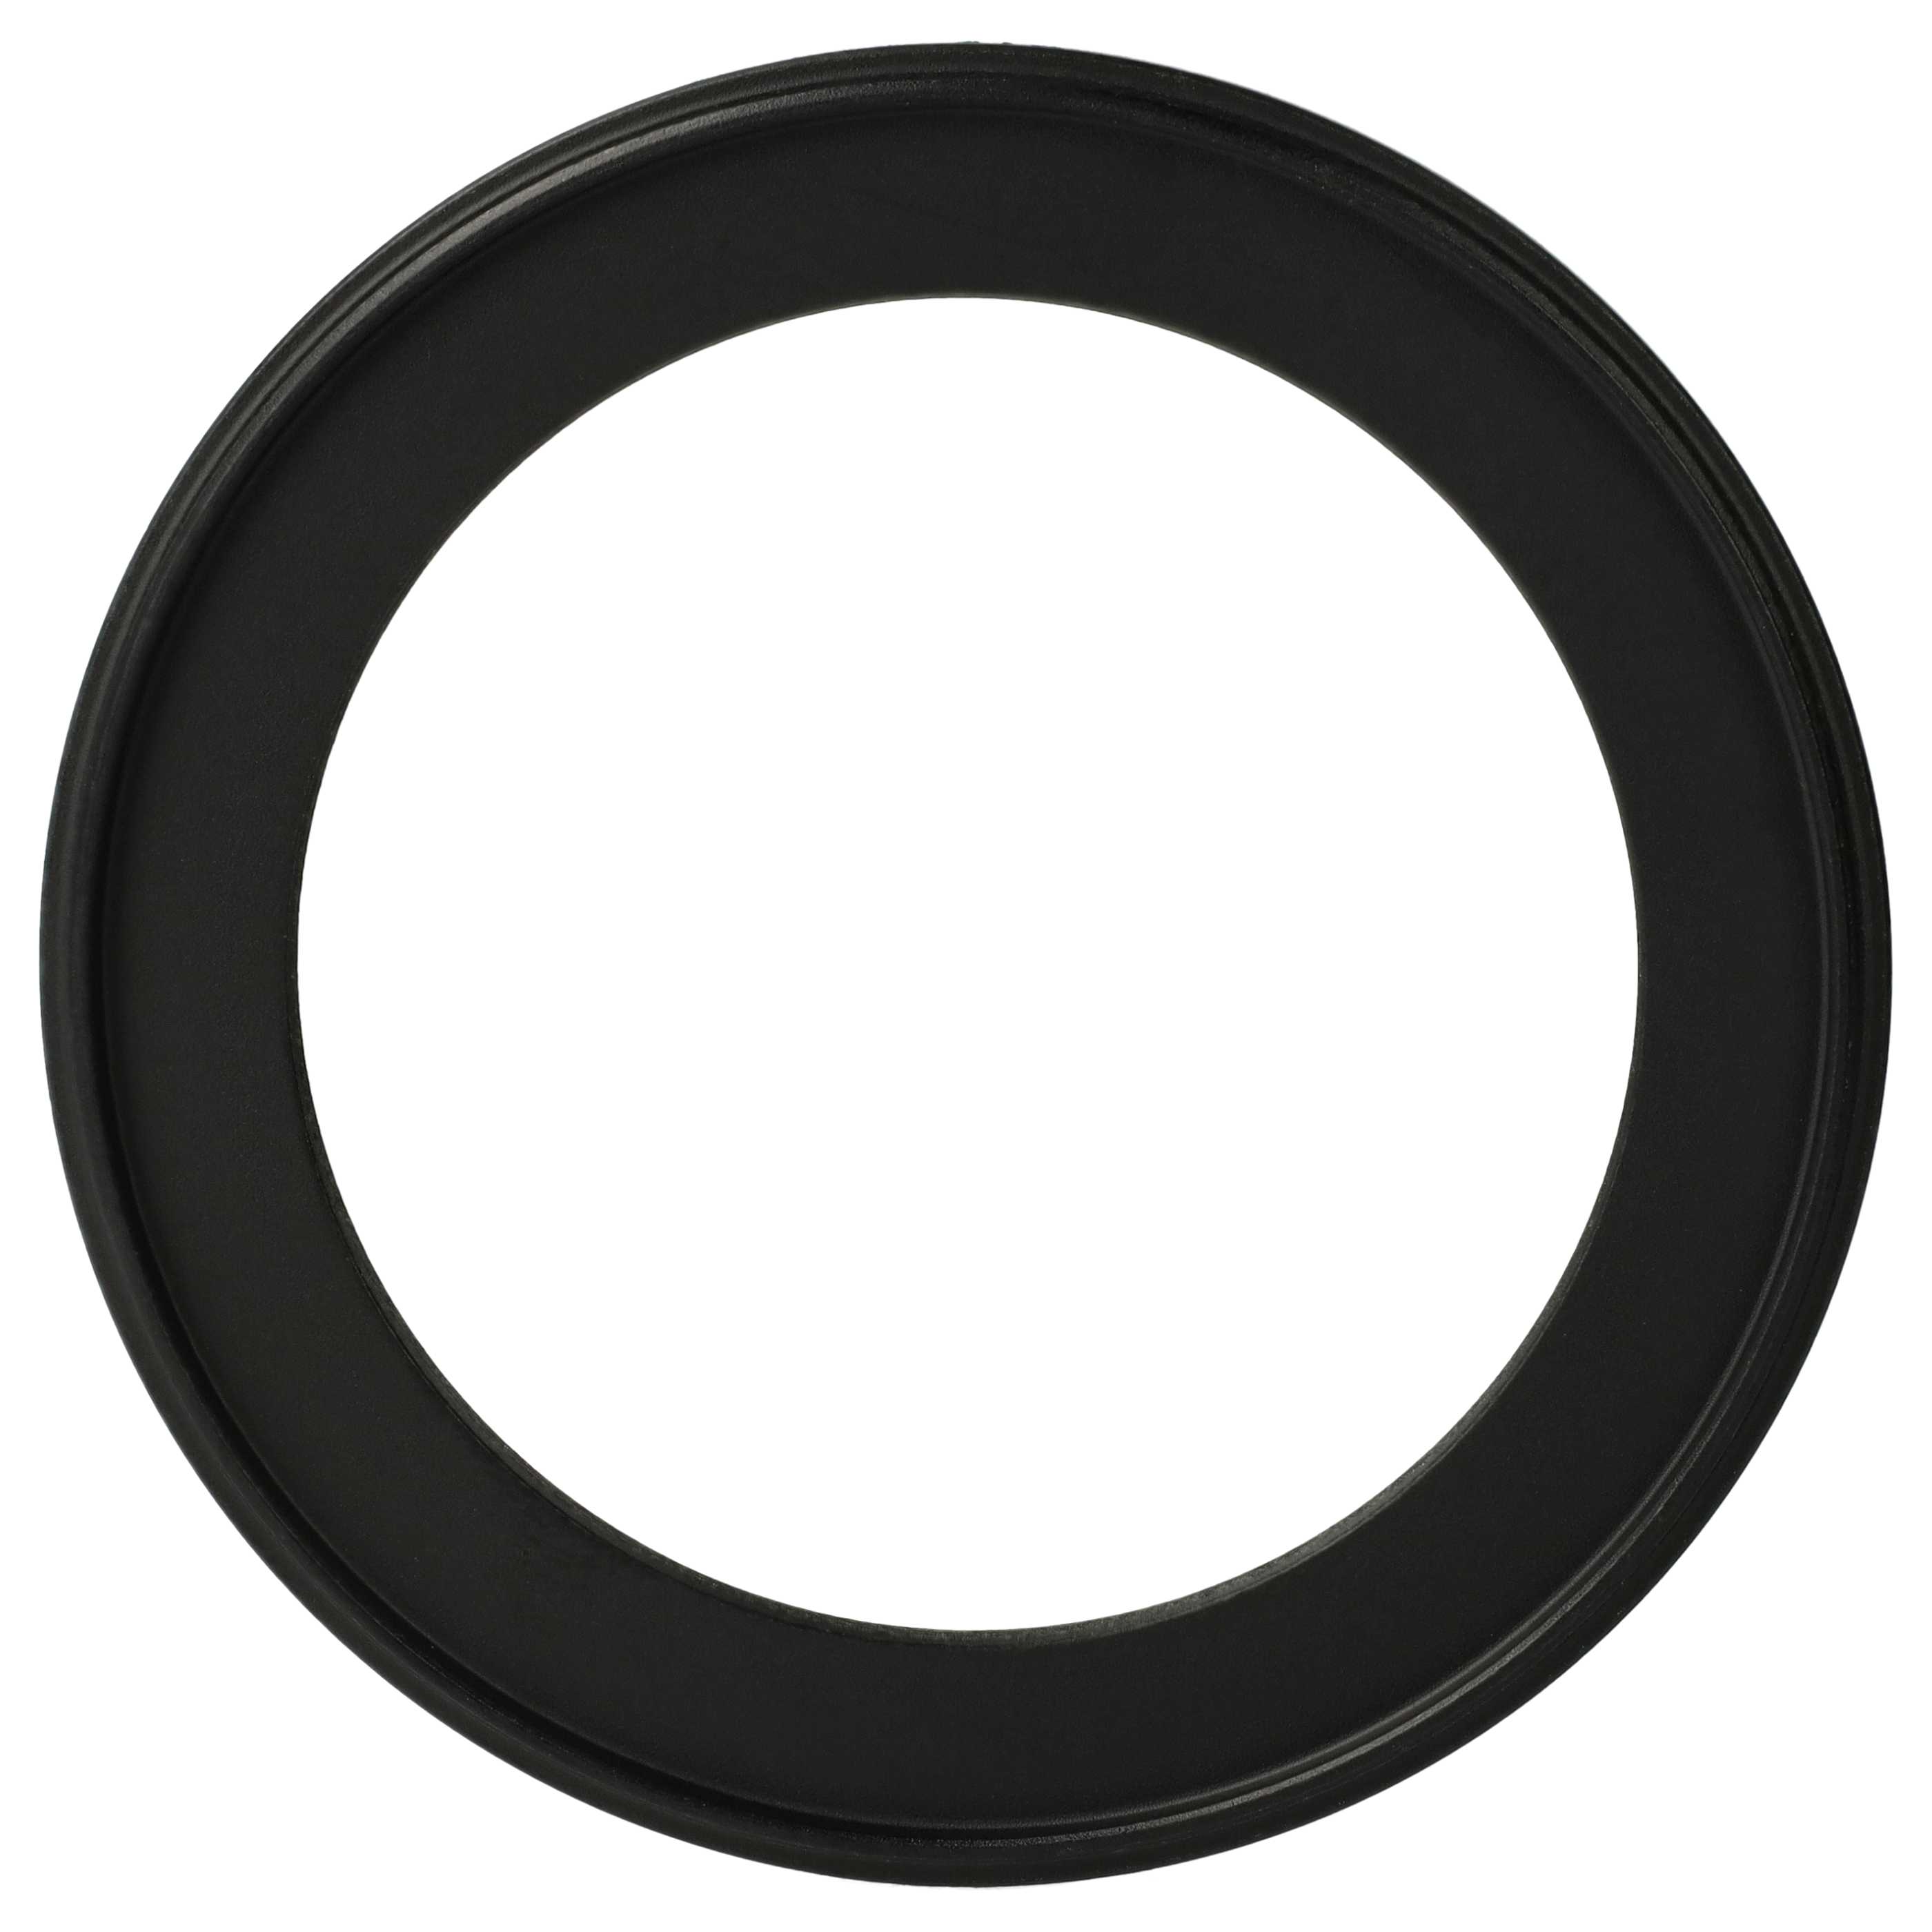 Anillo adaptador Step Down de 82 mm a 62 mm para objetivo de la cámara - Adaptador de filtro, metal, negro